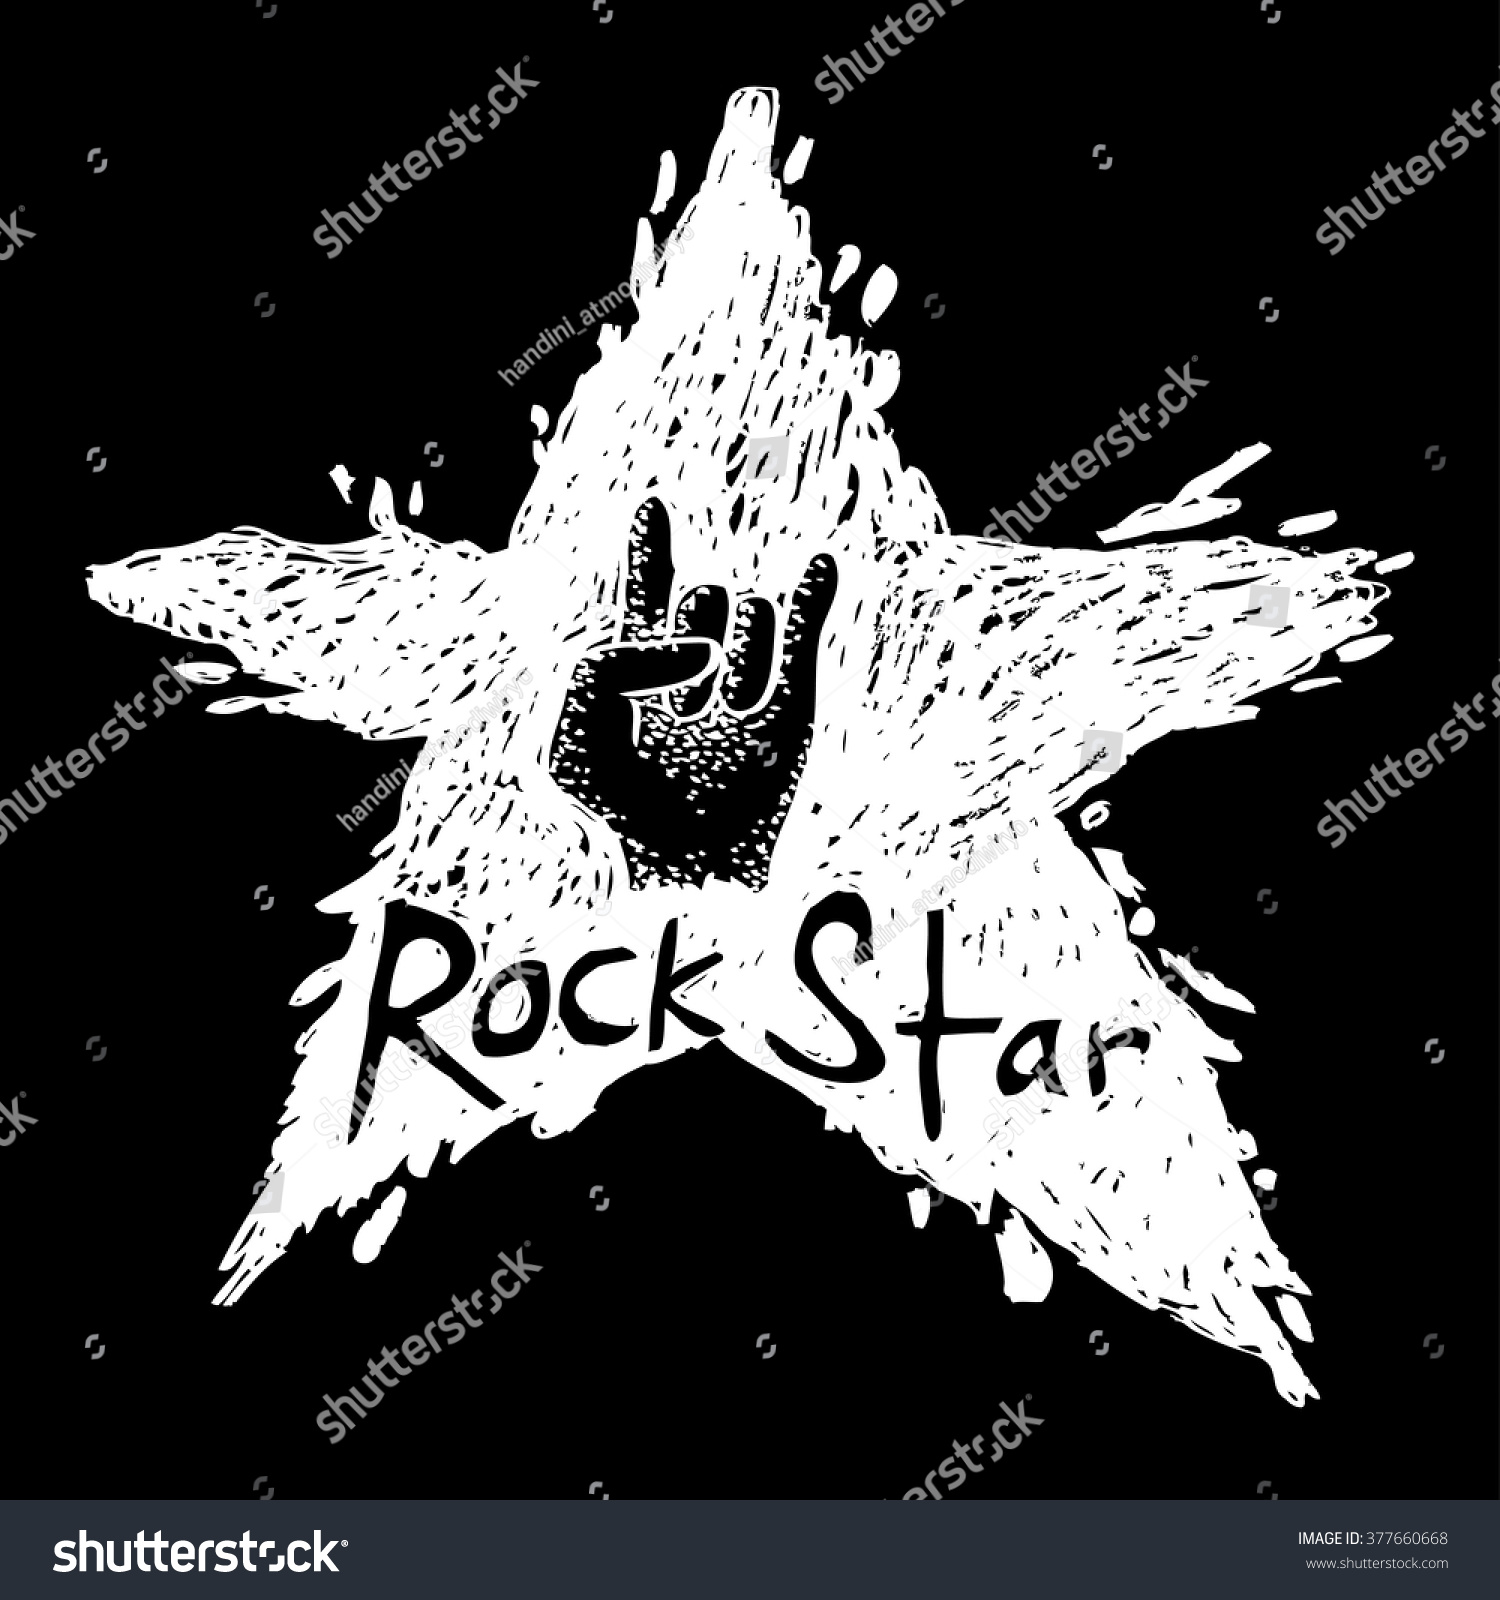 Rock Star Hand Drawing Illustration Stock Vector 377660668 - Shutterstock